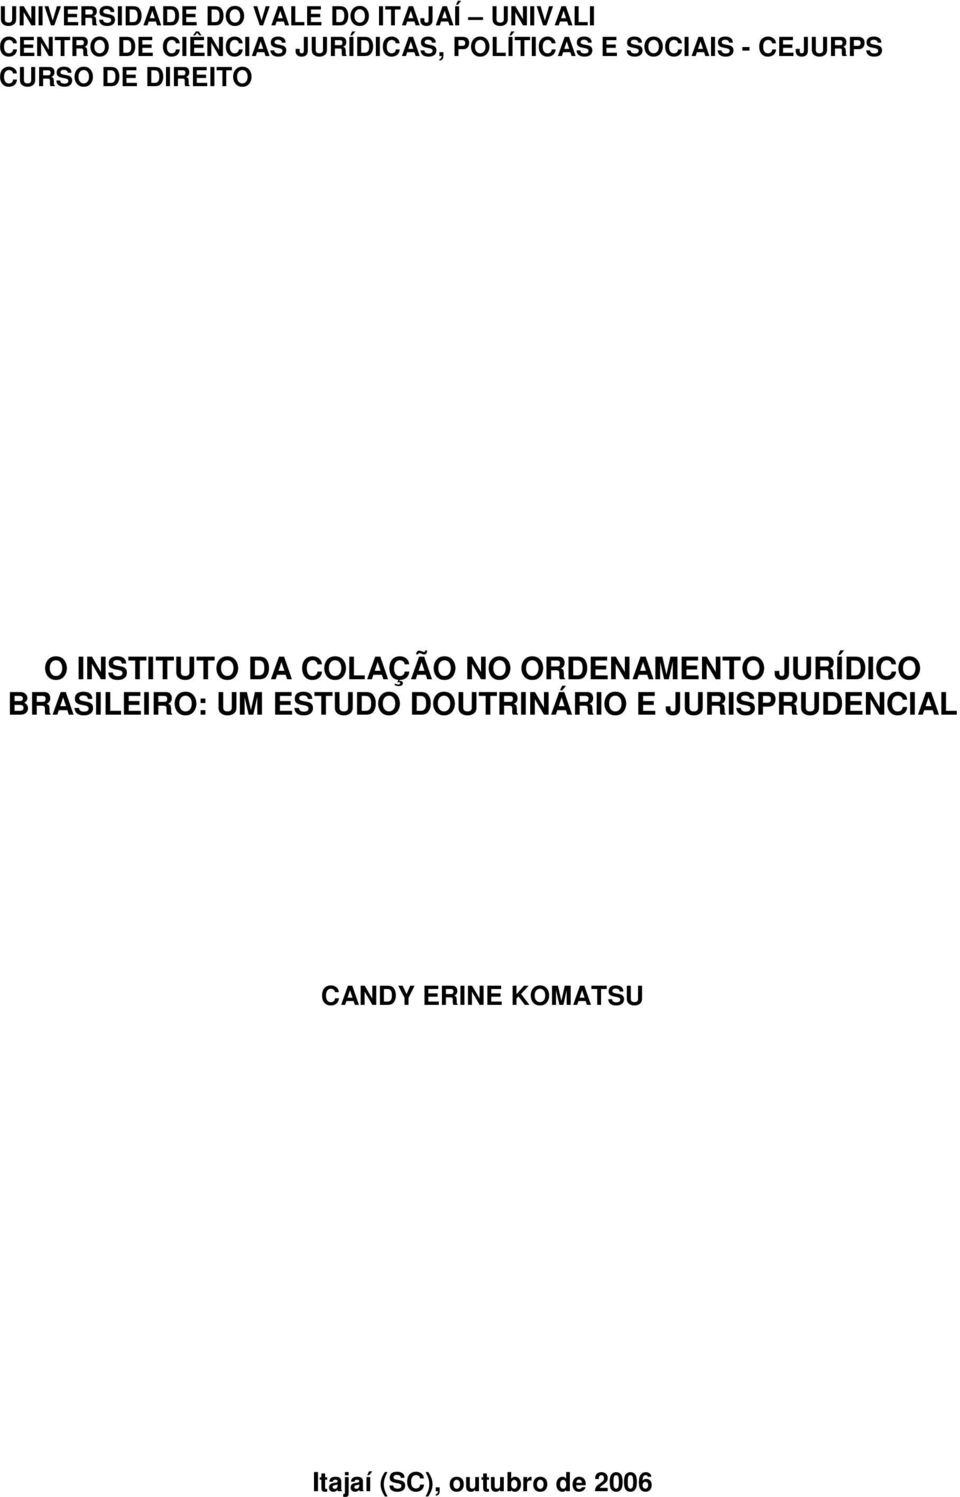 INSTITUTO DA COLAÇÃO NO ORDENAMENTO JURÍDICO BRASILEIRO: UM